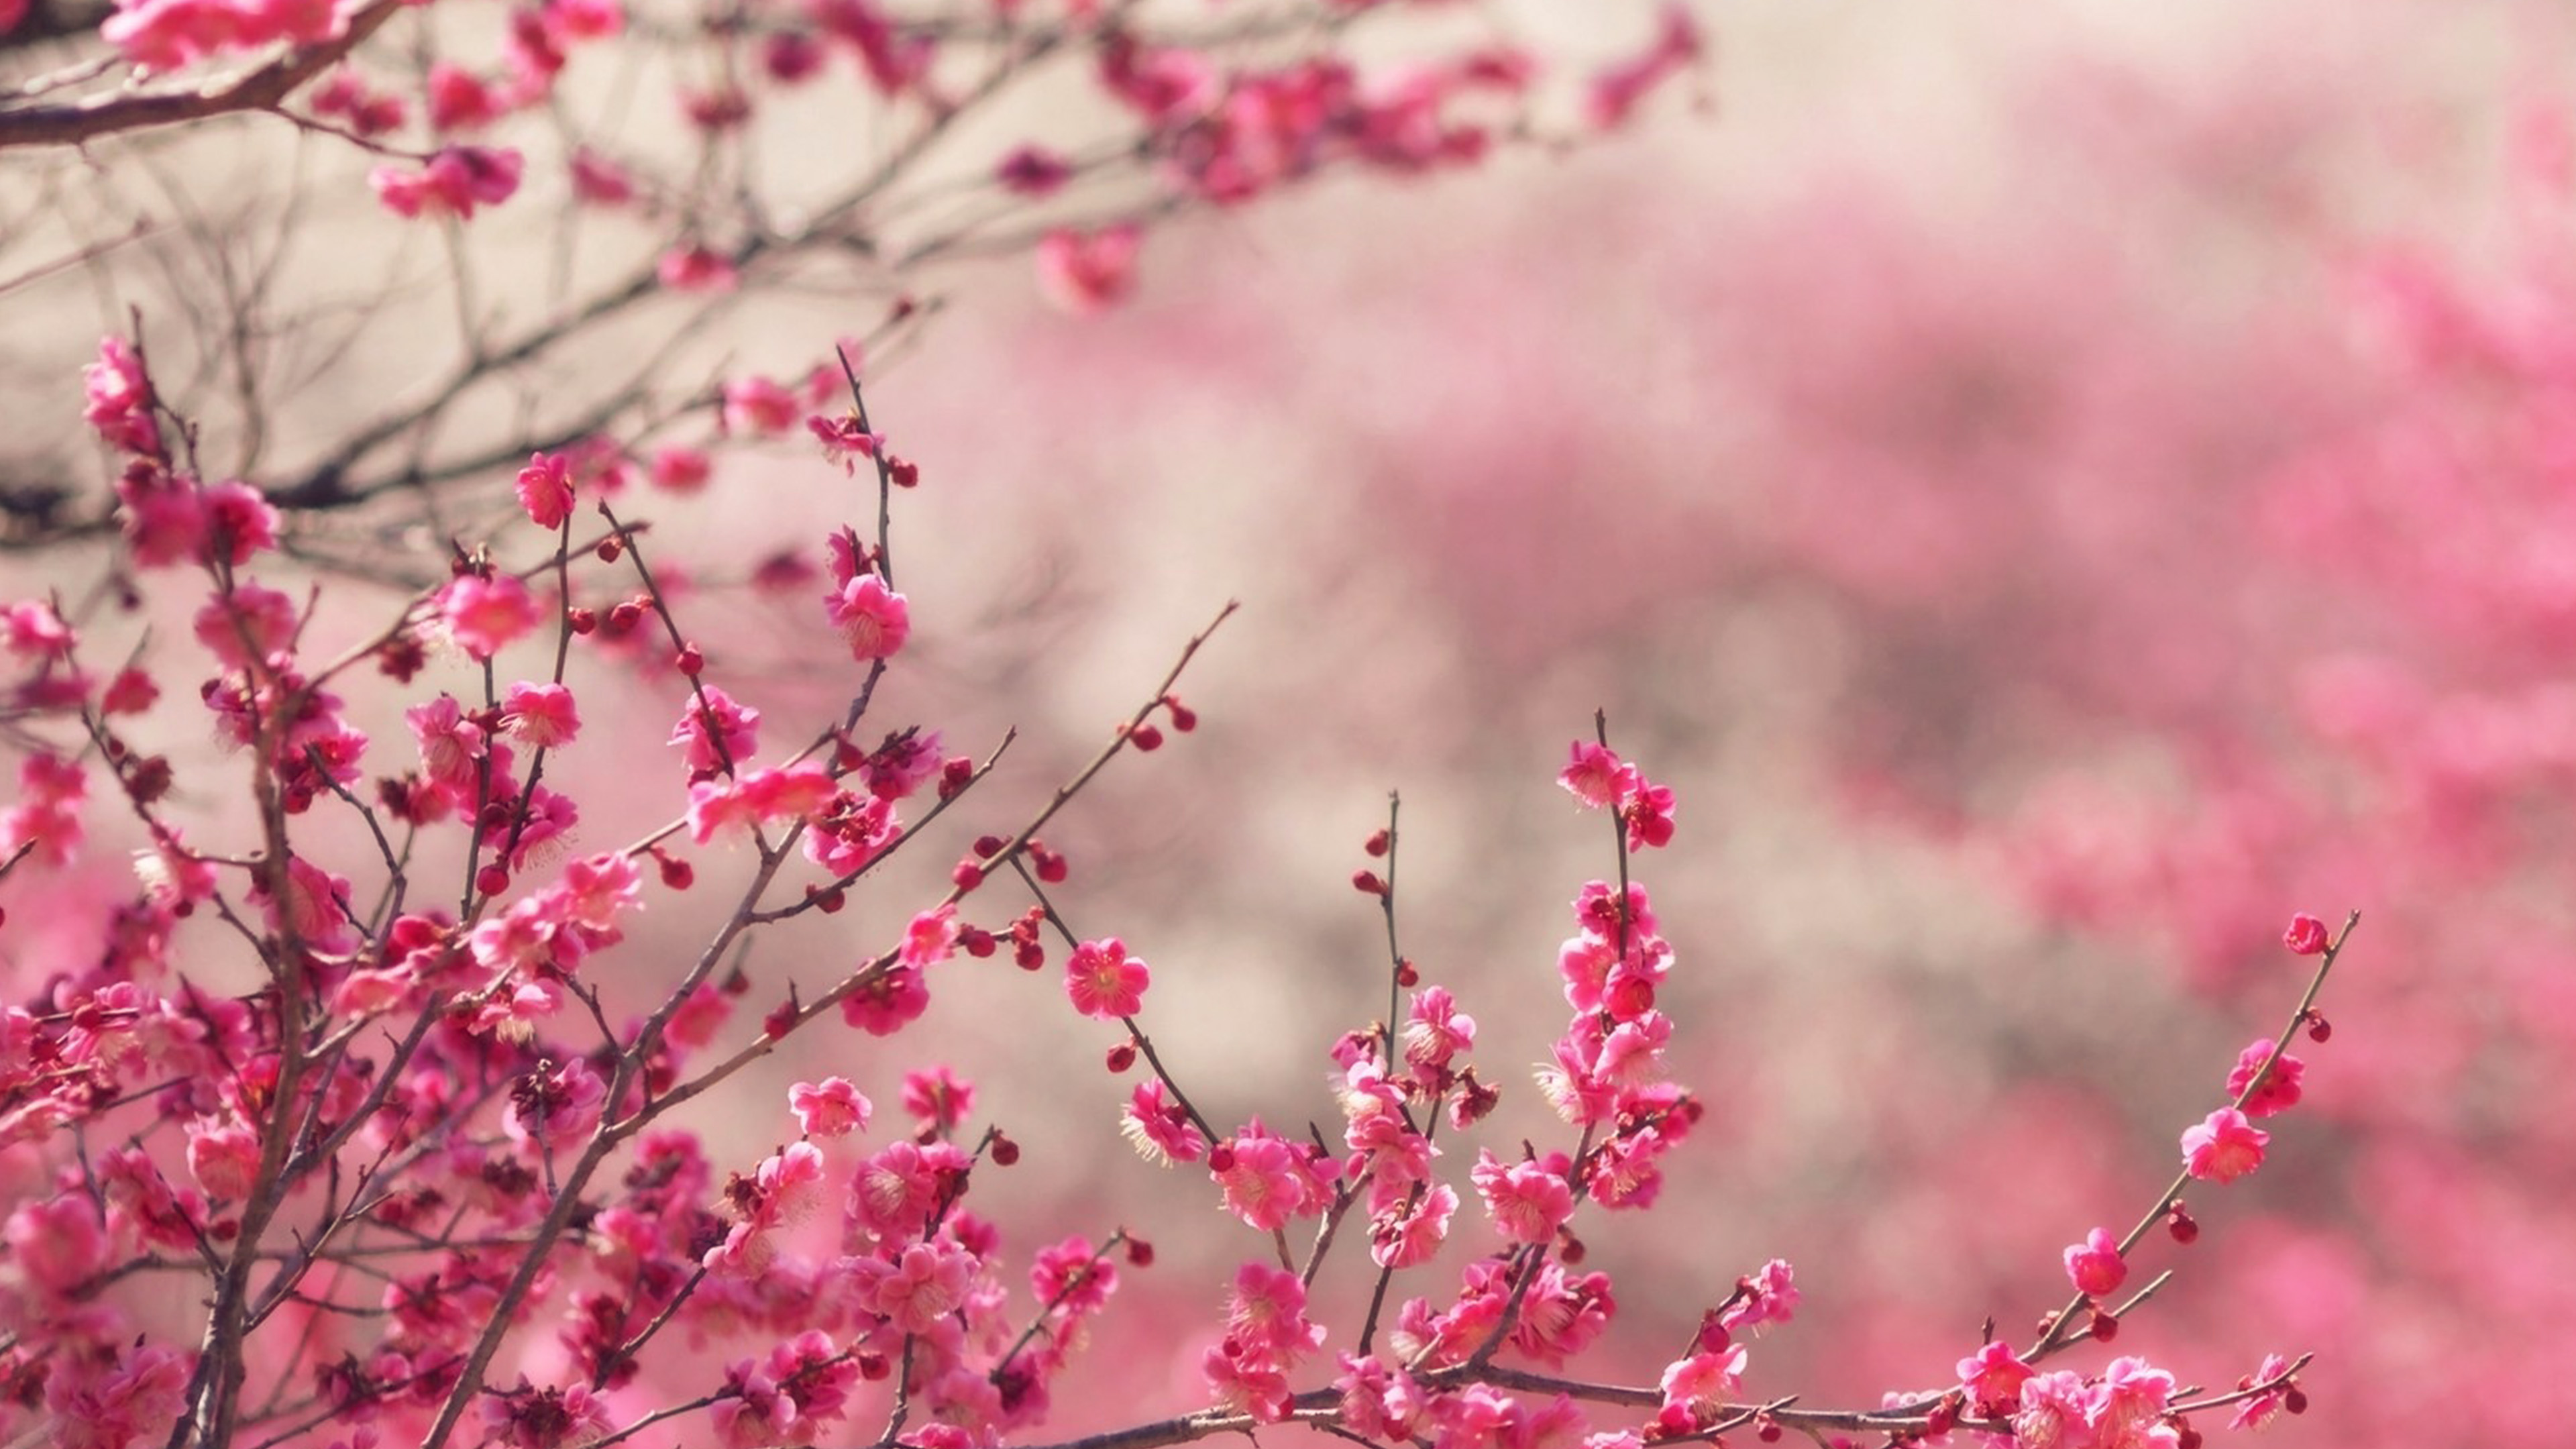 wallpaper for desktop, laptop. pink blossom nature flower spring